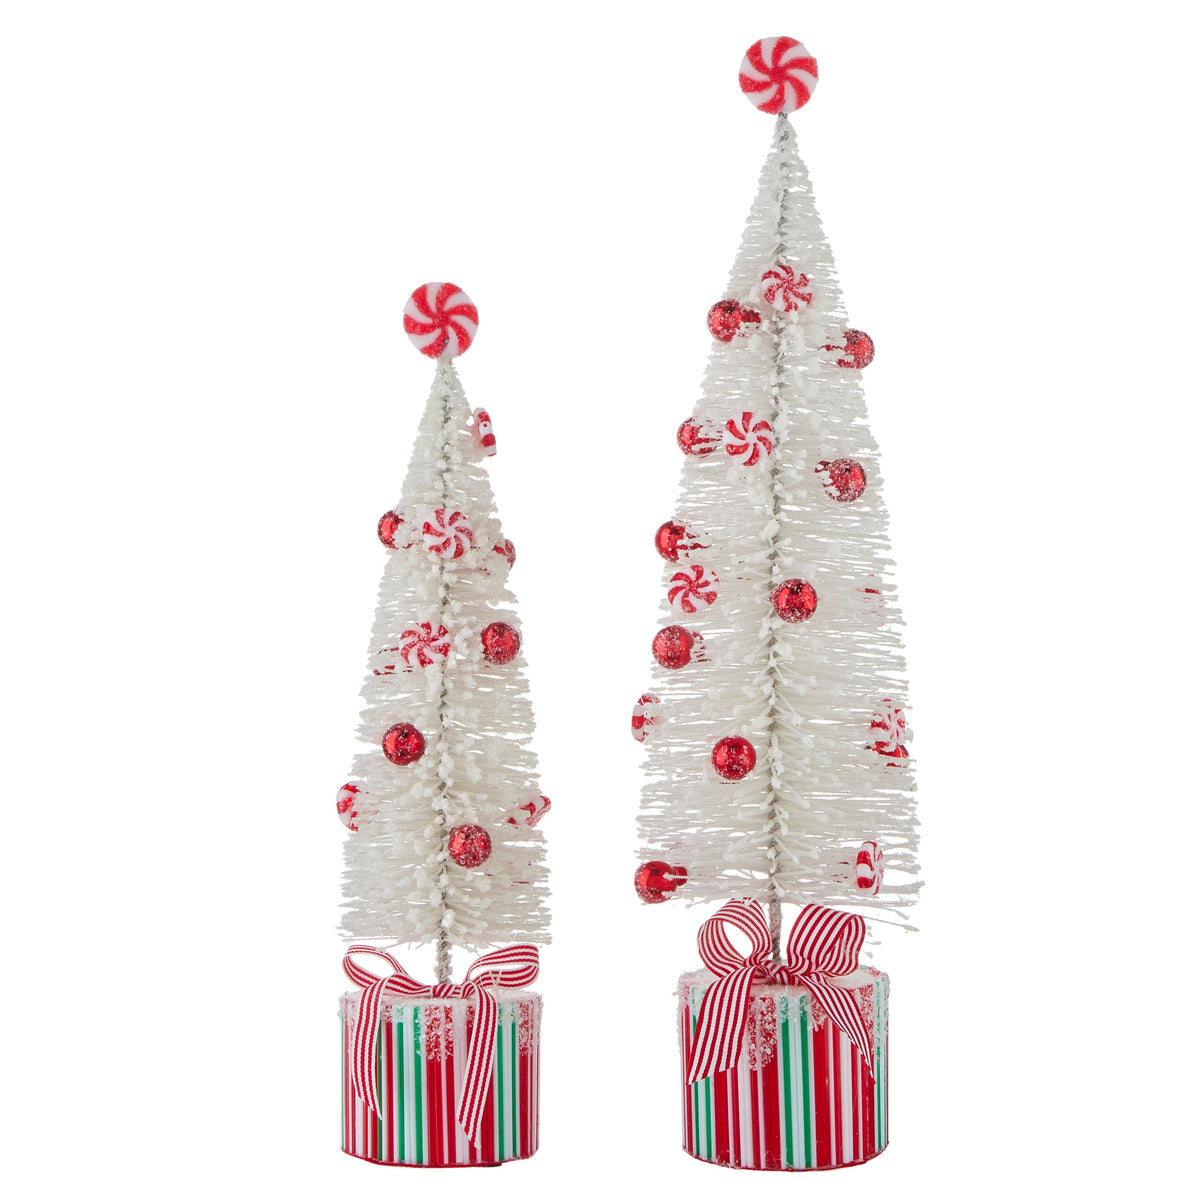 Pair Bottle Brush Trees - My Christmas